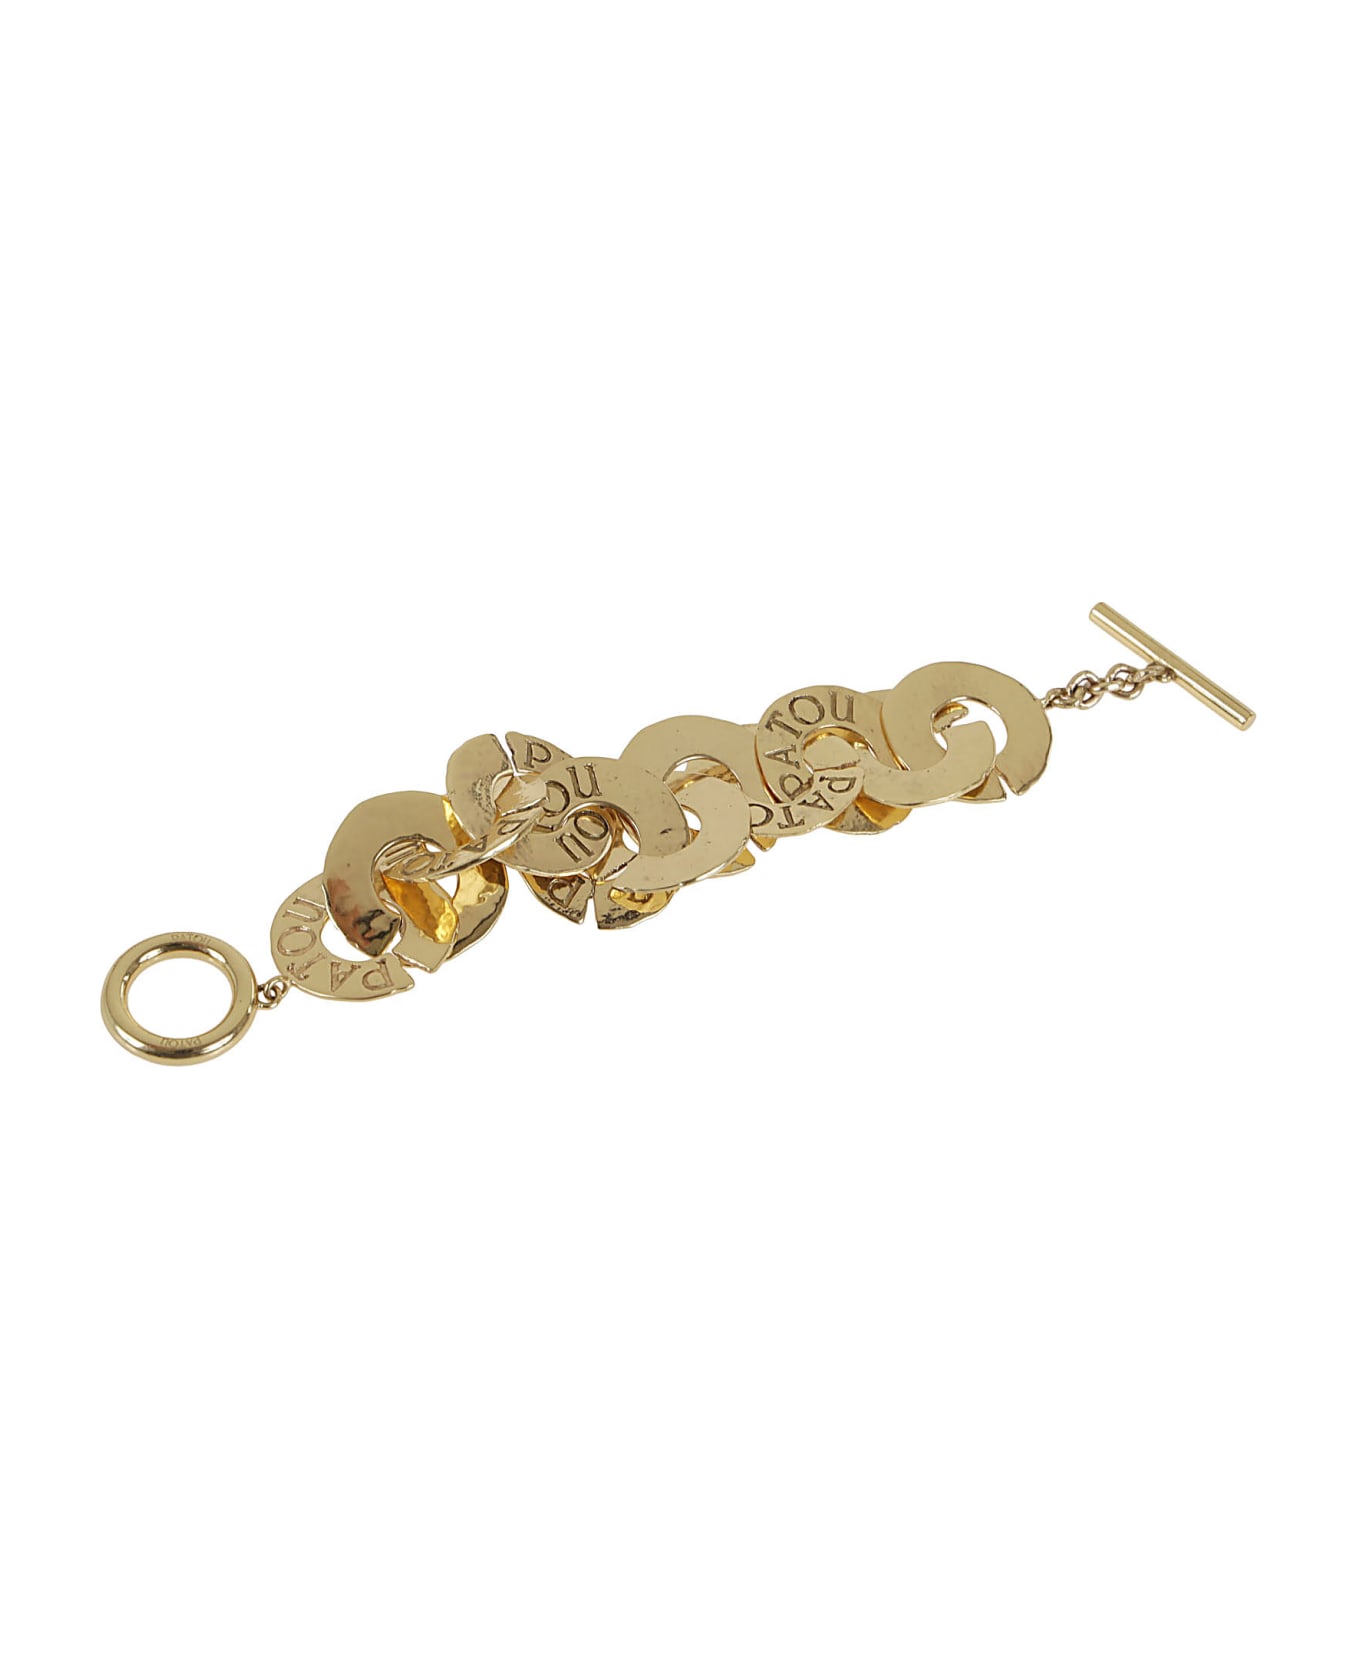 Patou Antique Coins Bracelet - Golden